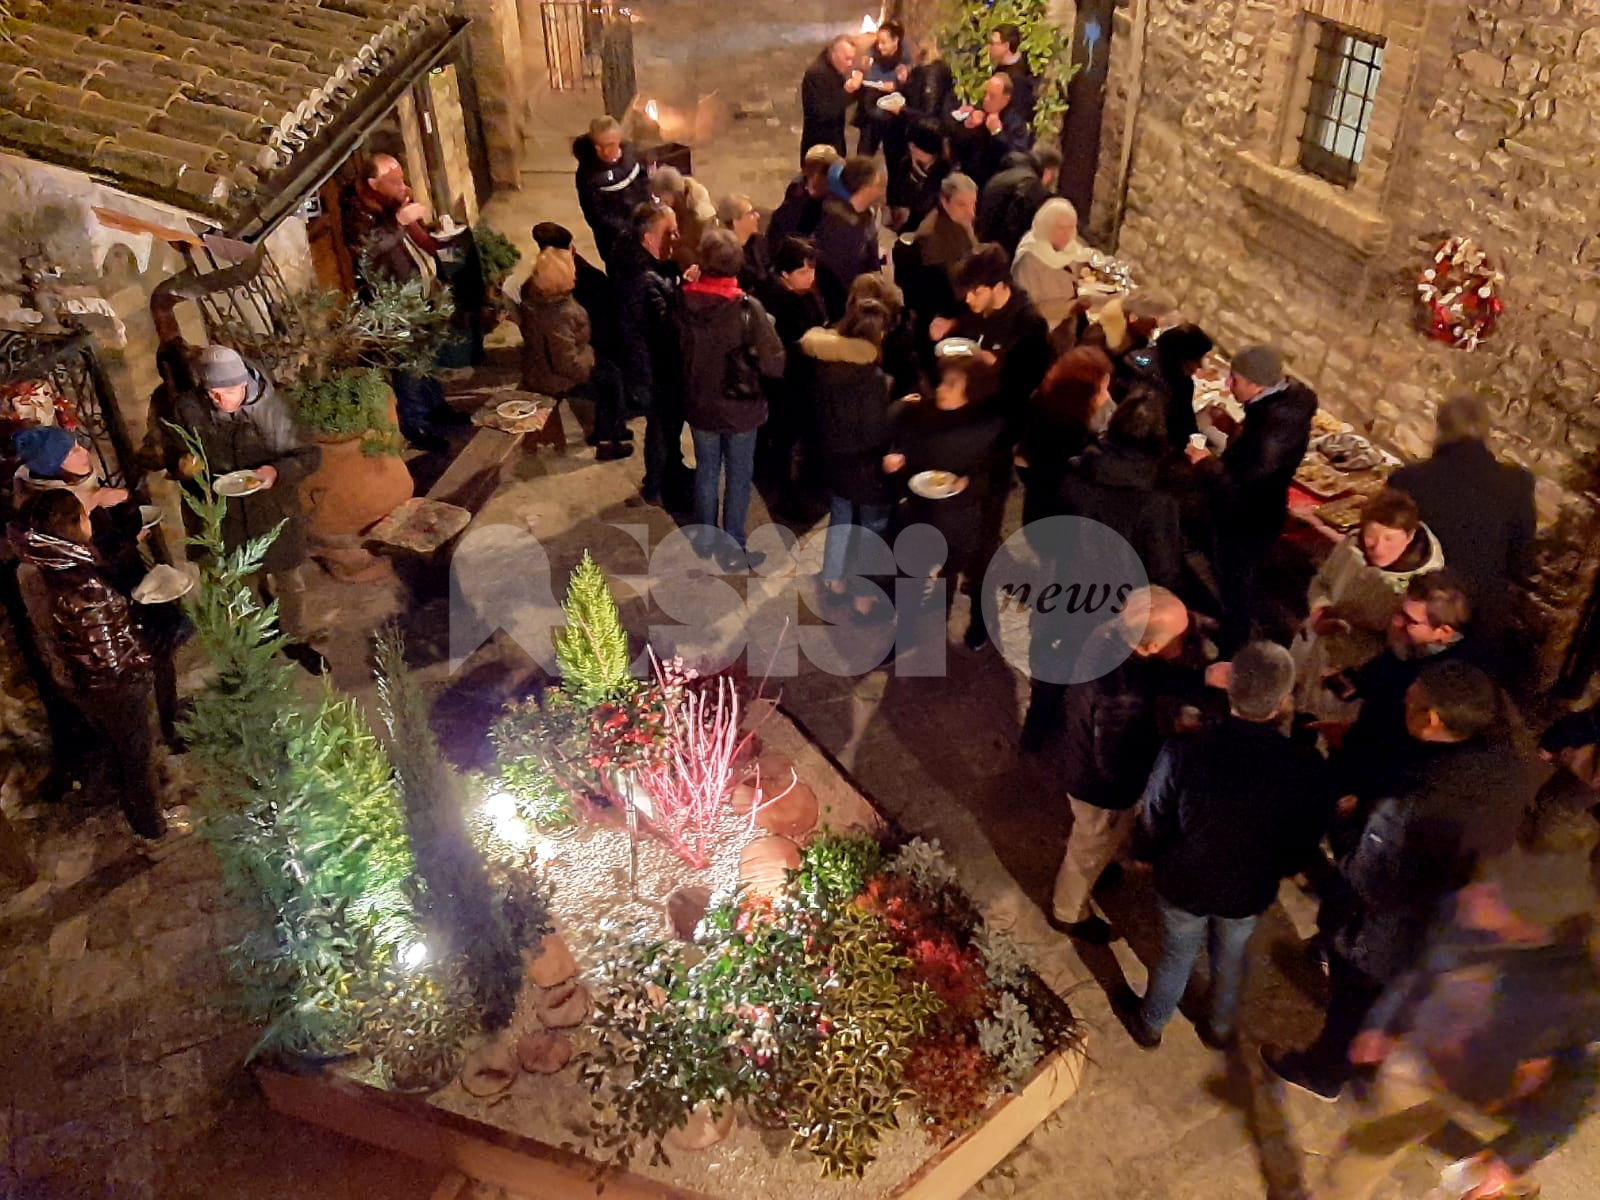 Natale ad Assisi fai da te, a Montecavallo e San Pietro accese le luminarie dei cittadini (foto)